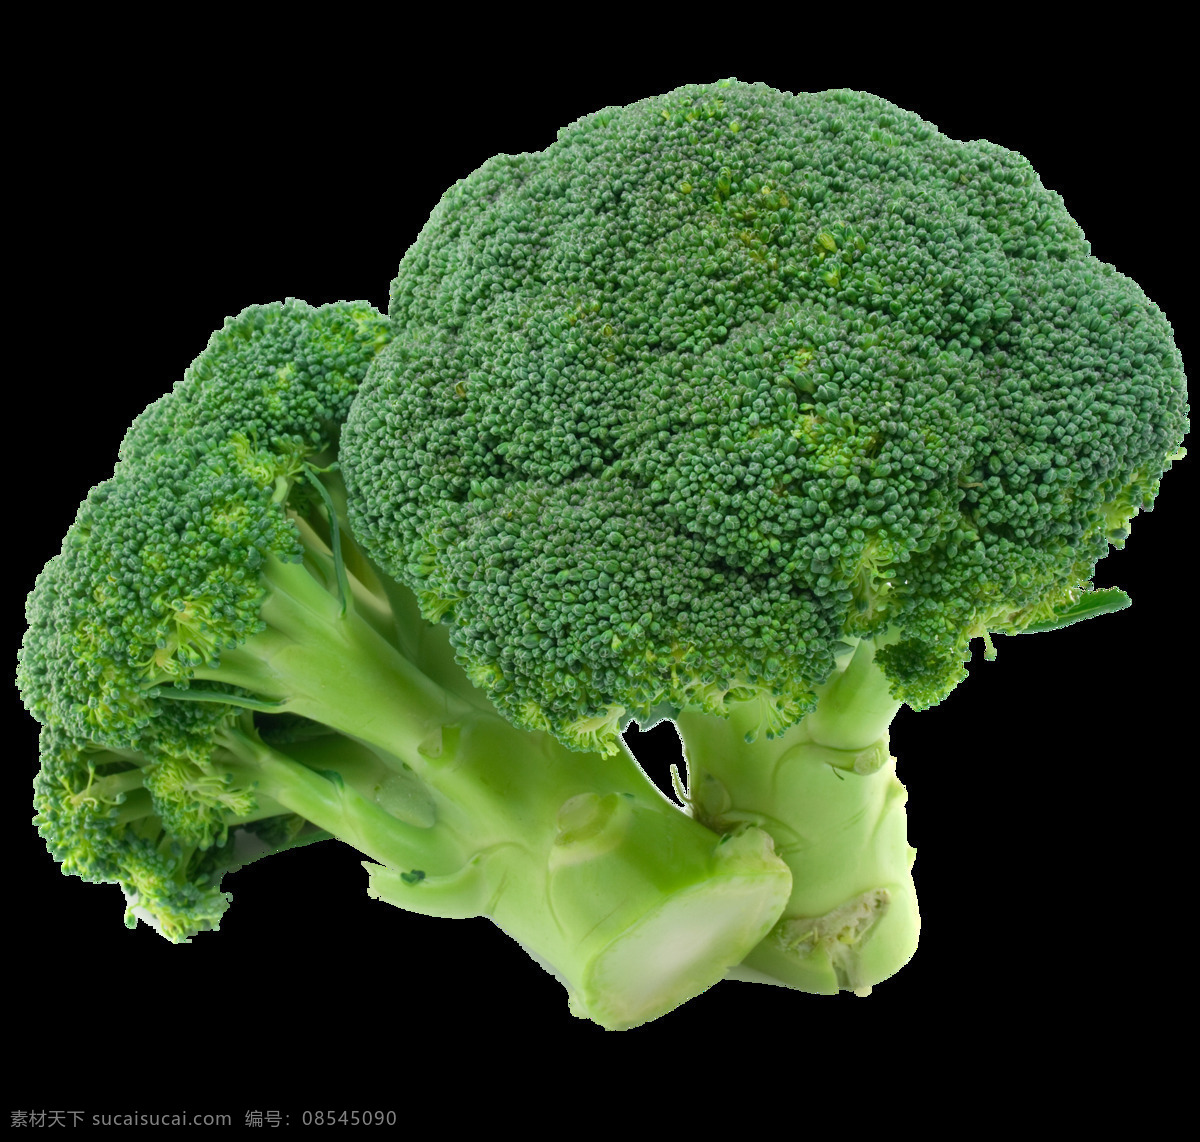 西兰花 蔬菜 新鲜蔬菜 有机蔬菜 绿色蔬菜 农产品 菜篮子 生物世界